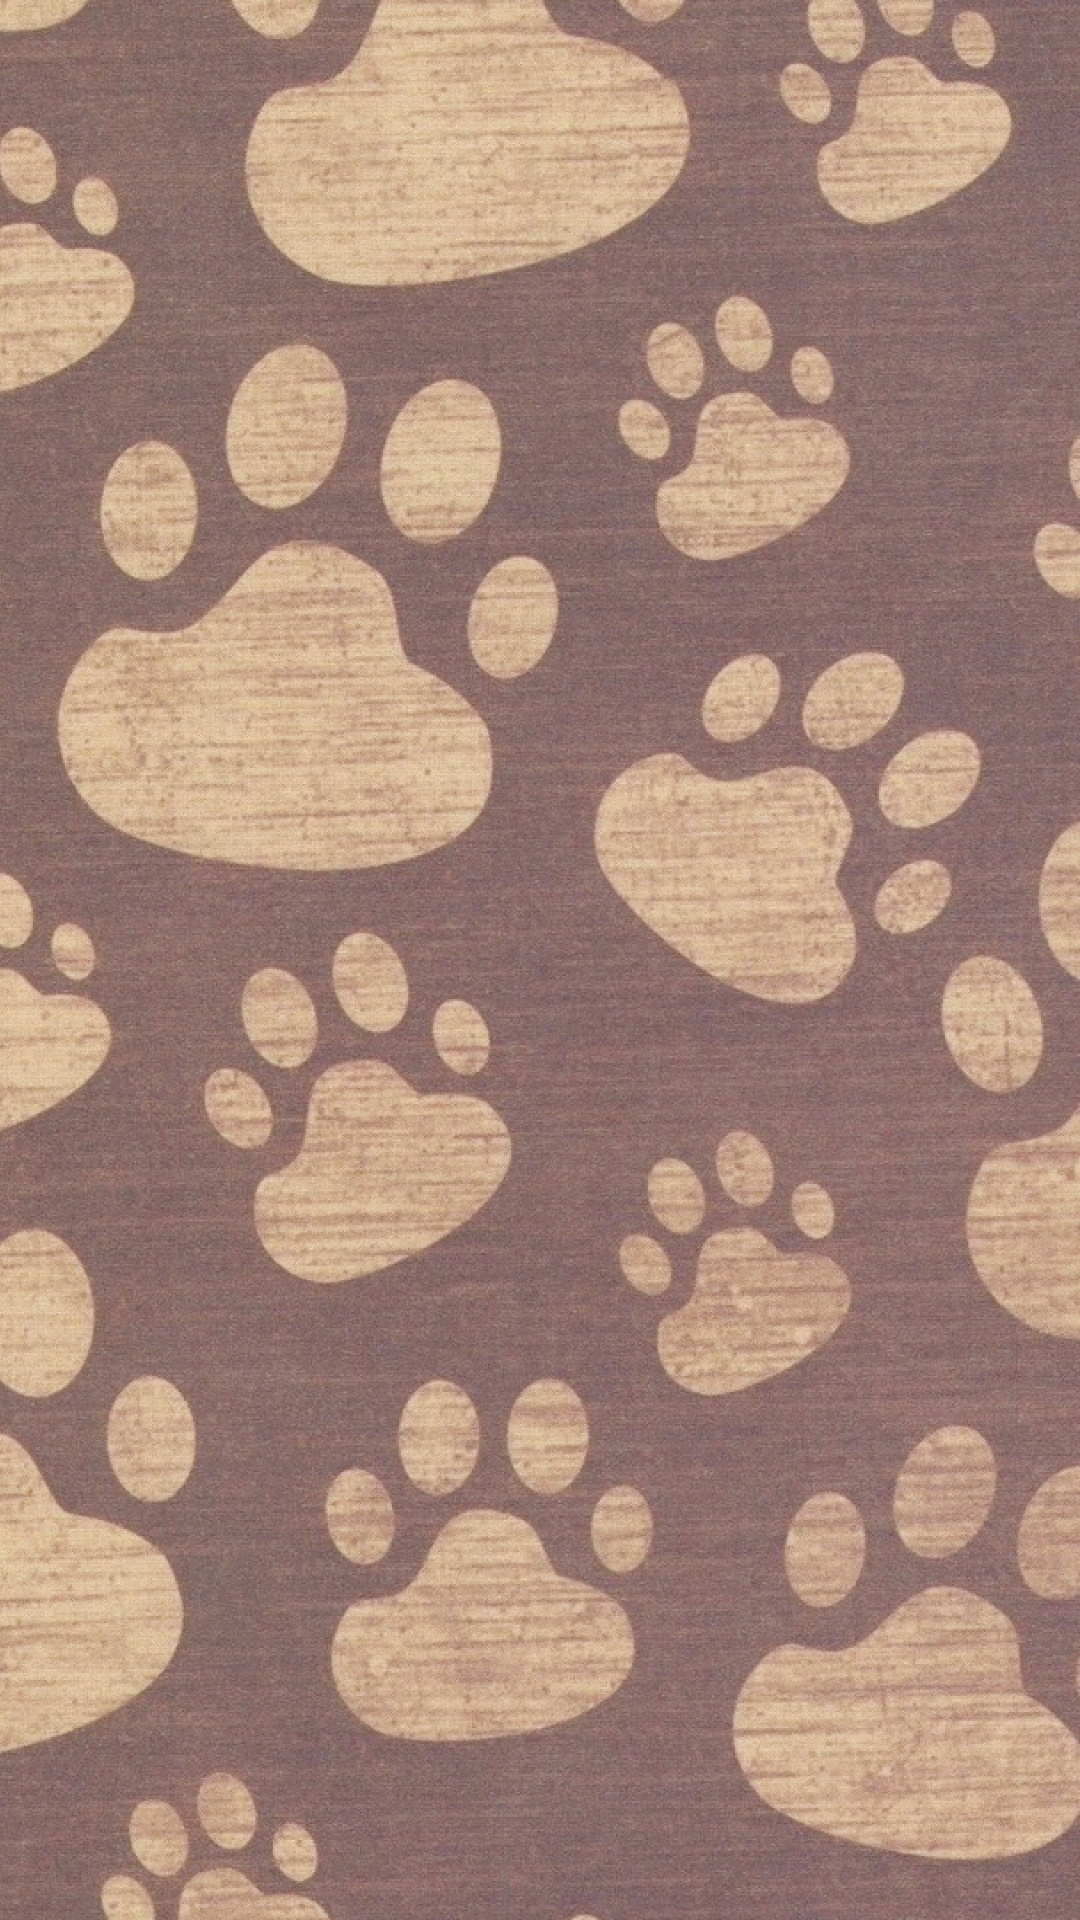 Textile à Pois Marron et Blanc. Wallpaper in 1080x1920 Resolution